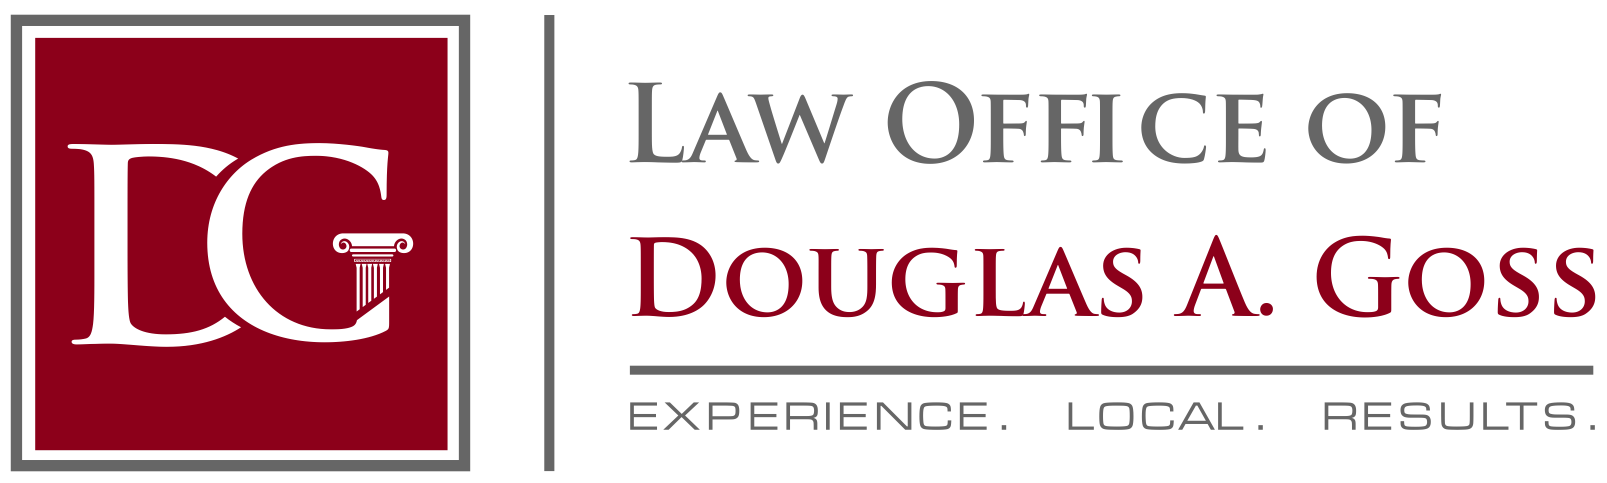 Law Office of Douglas A. Goss